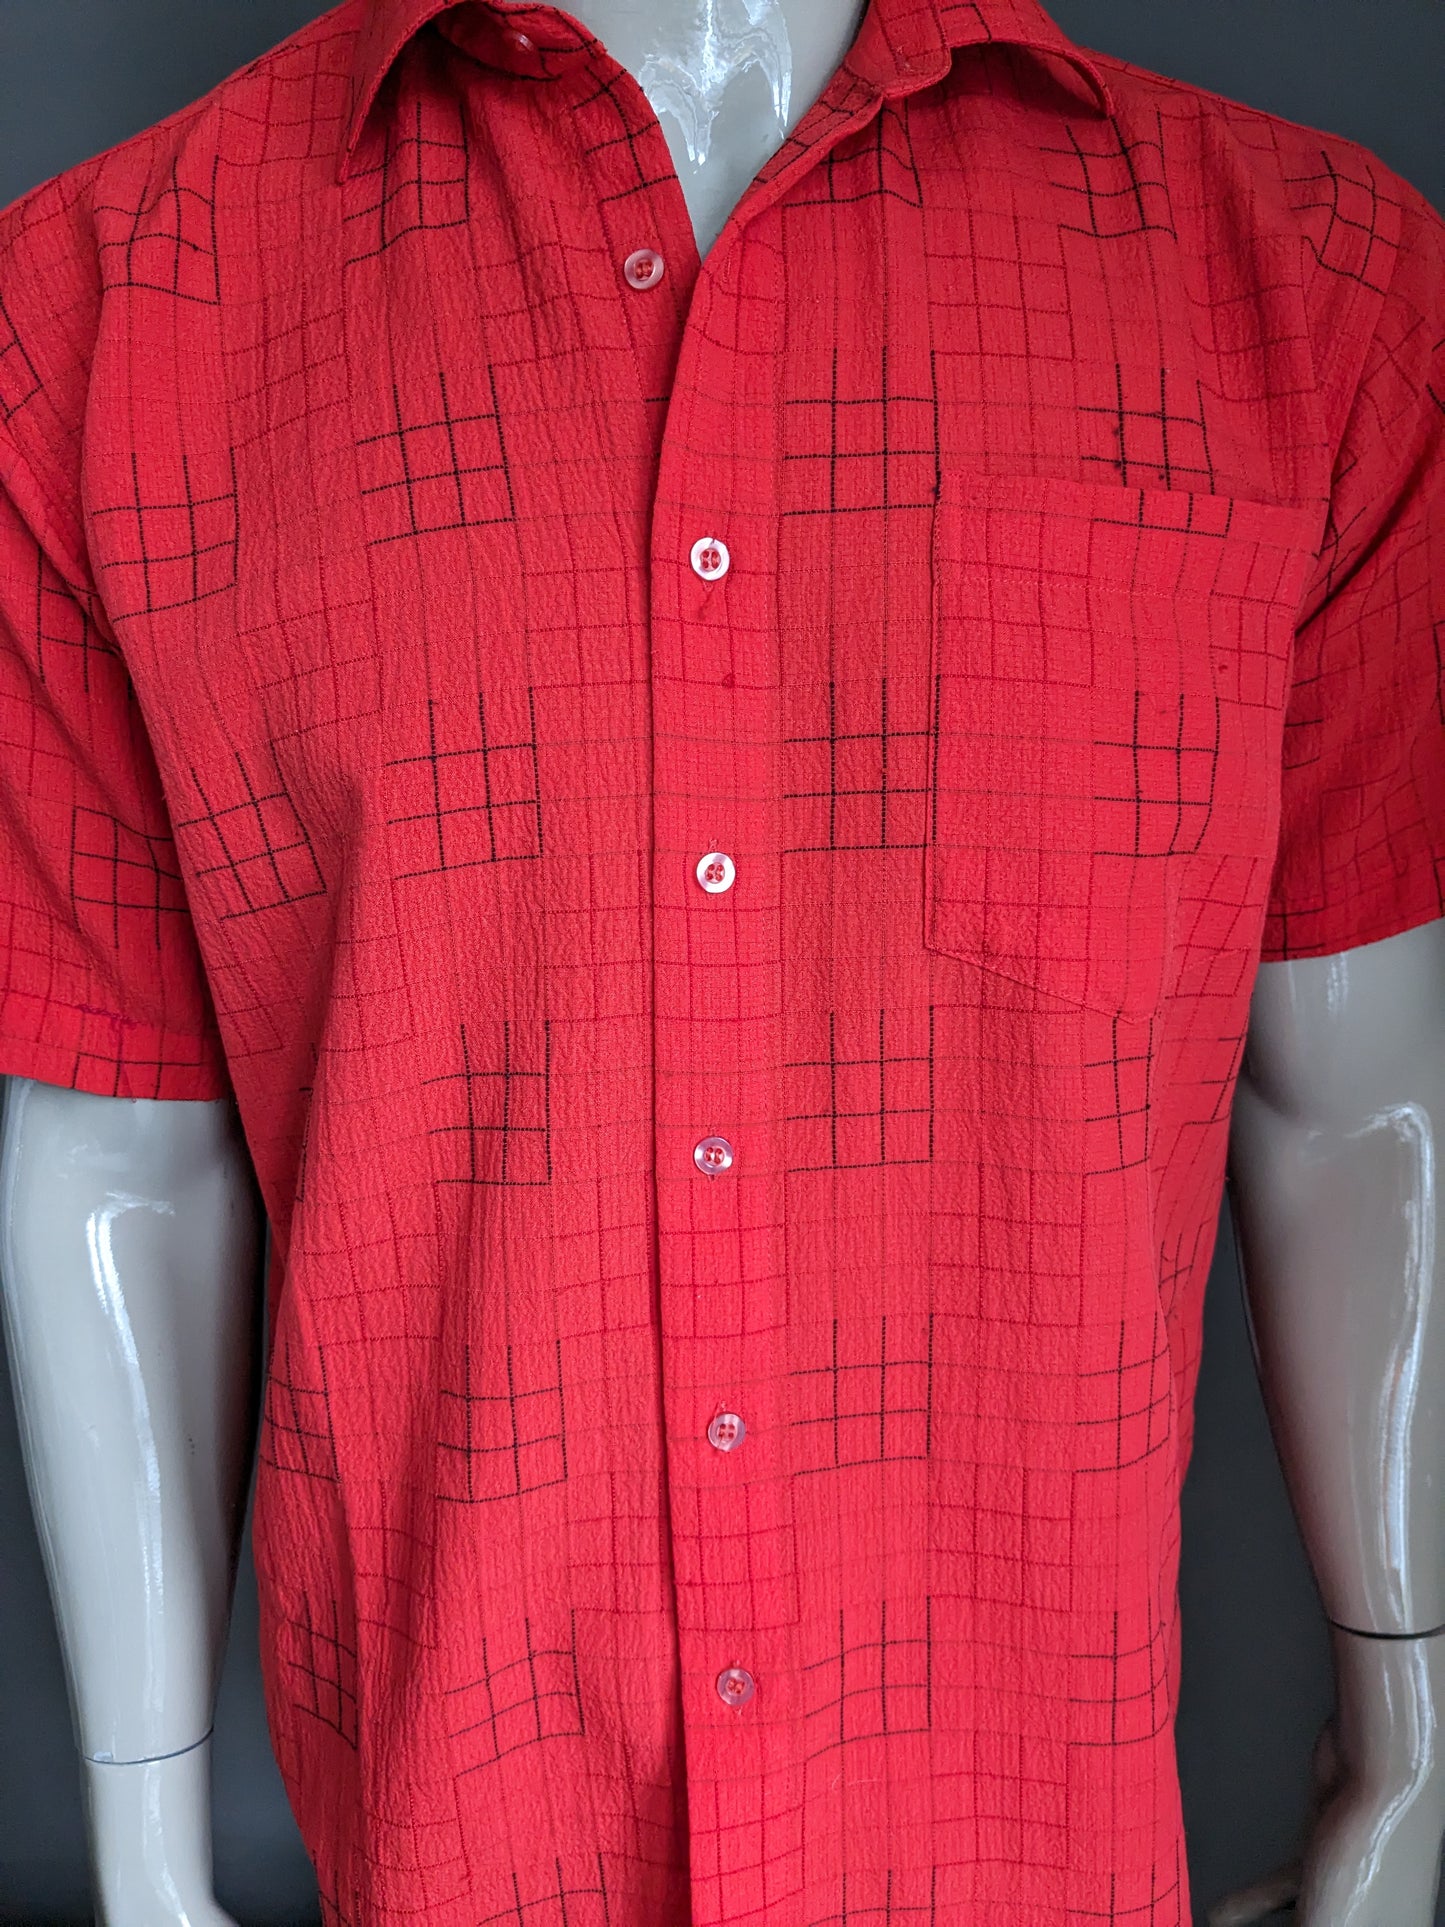 Vintage Century overhemd korte mouw. Zwart rood geruit. Maat L.